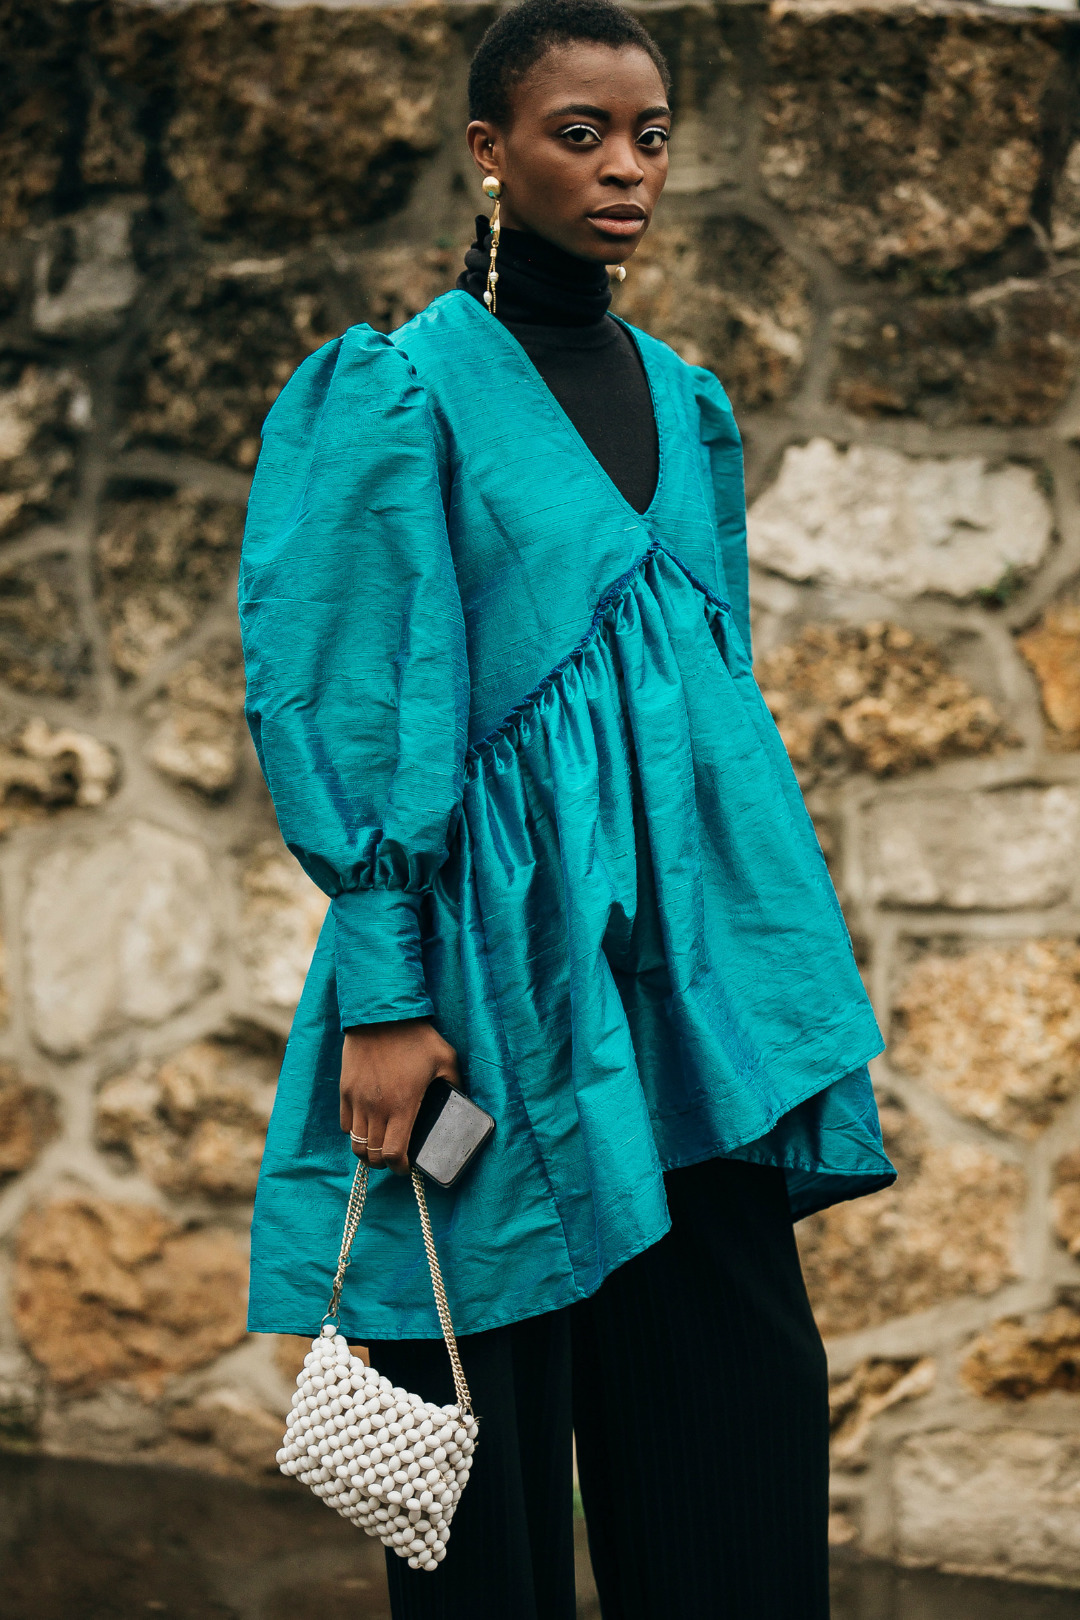 Sokak Stili: 2019-20 Sonbahar/Kış Paris Moda Haftası 4. Gün